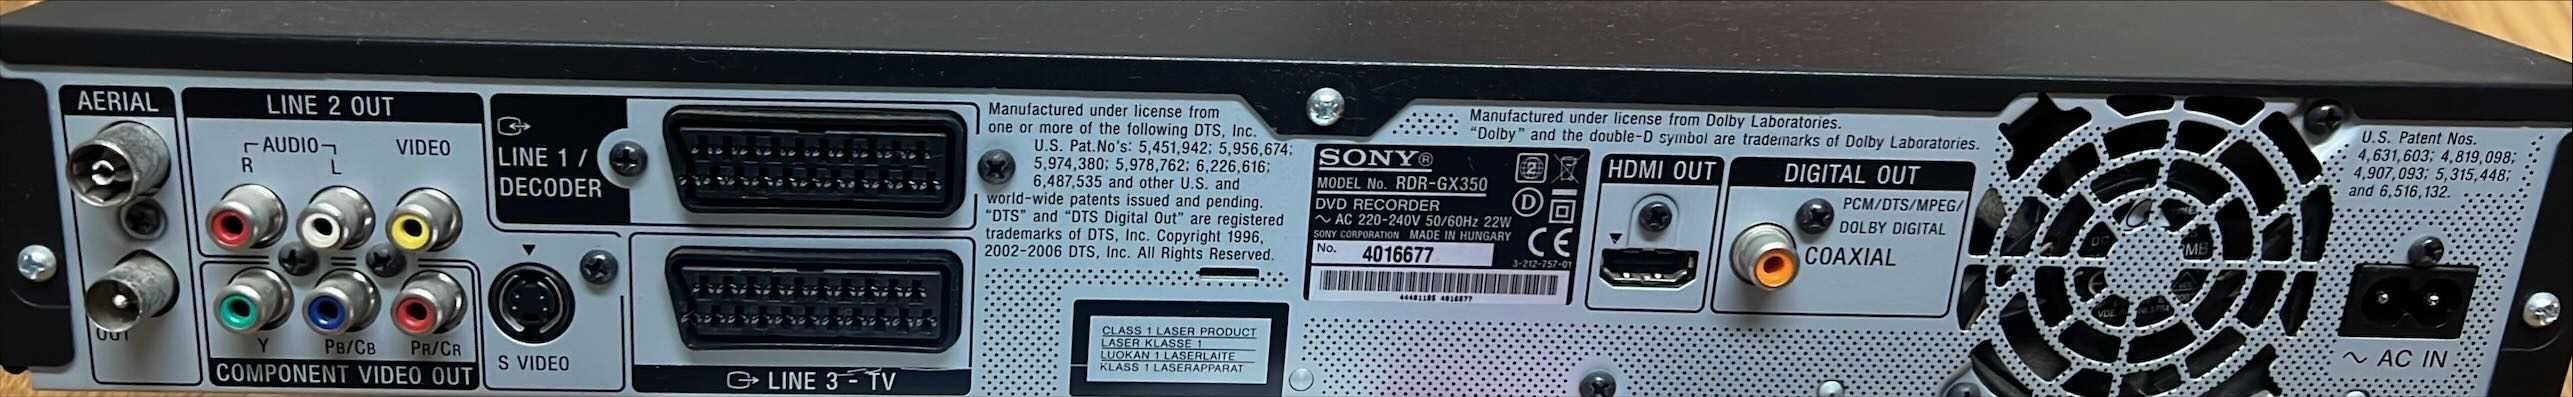 DVD Recorder RDR-GX350 HRMI  1080p UPSCALING